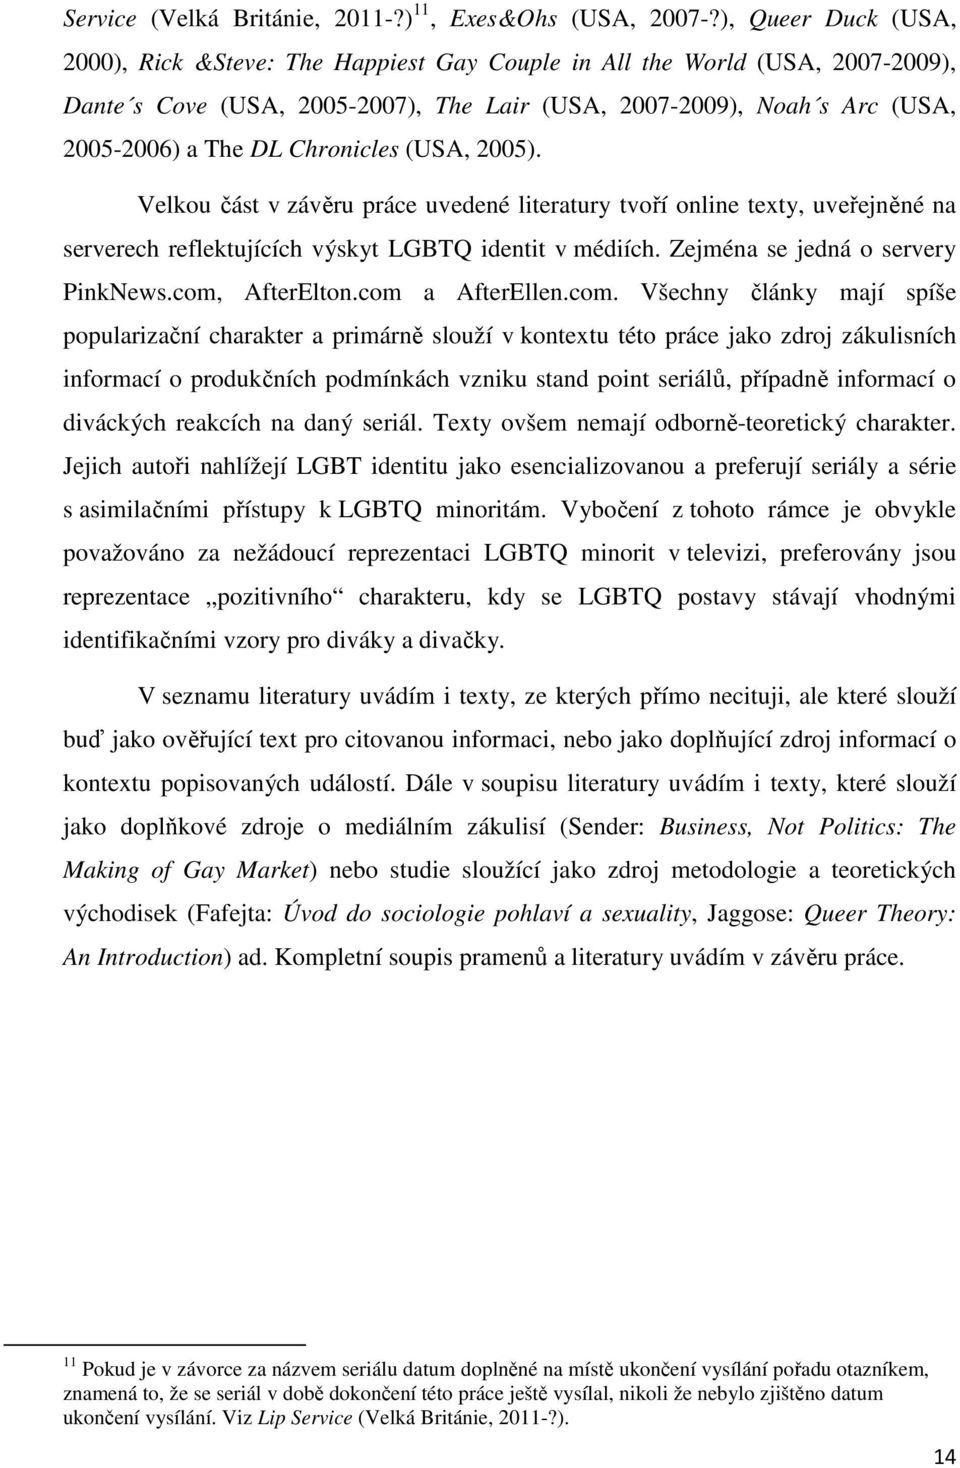 Chronicles (USA, 2005). Velkou část v závěru práce uvedené literatury tvoří online texty, uveřejněné na serverech reflektujících výskyt LGBTQ identit v médiích. Zejména se jedná o servery PinkNews.